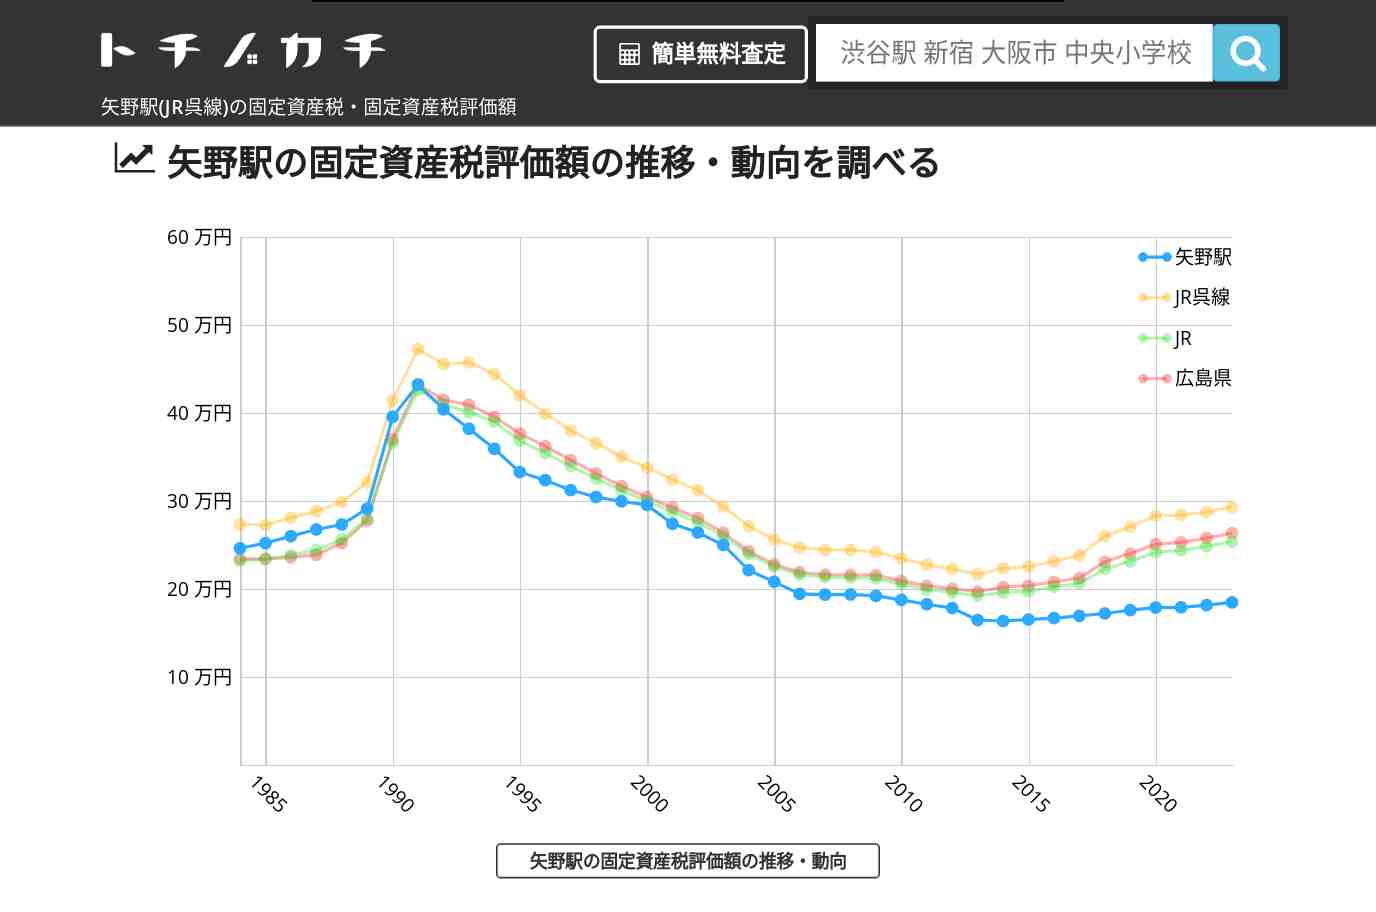 矢野駅(JR呉線)の固定資産税・固定資産税評価額 | トチノカチ